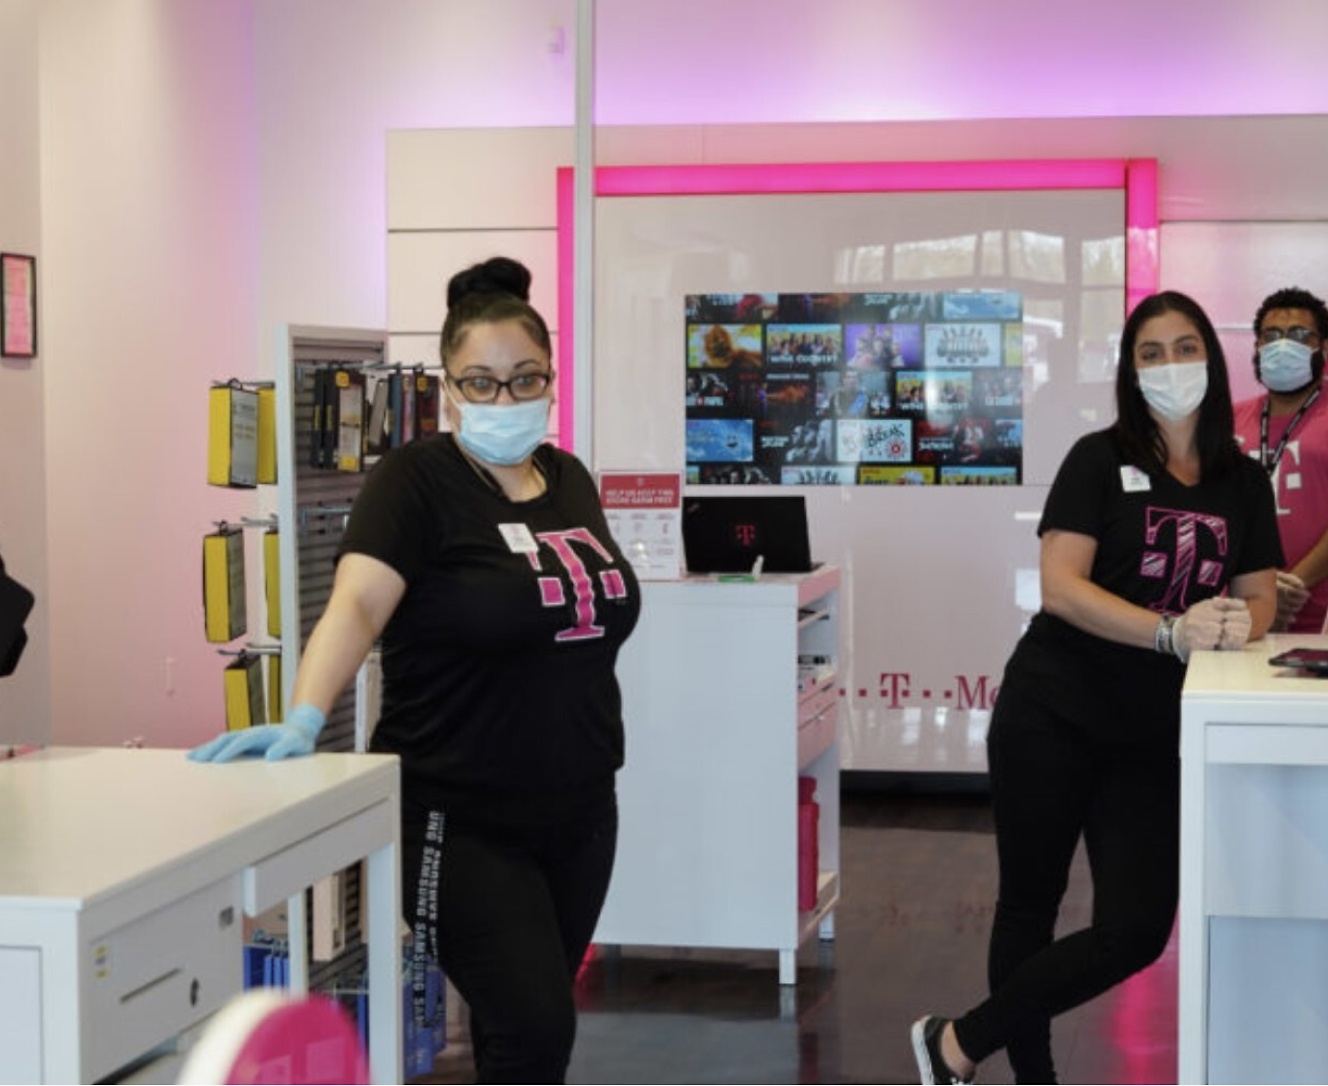 Eine Gruppe von Personen, die Gesichtsmasken in einem Geschäft tragen.